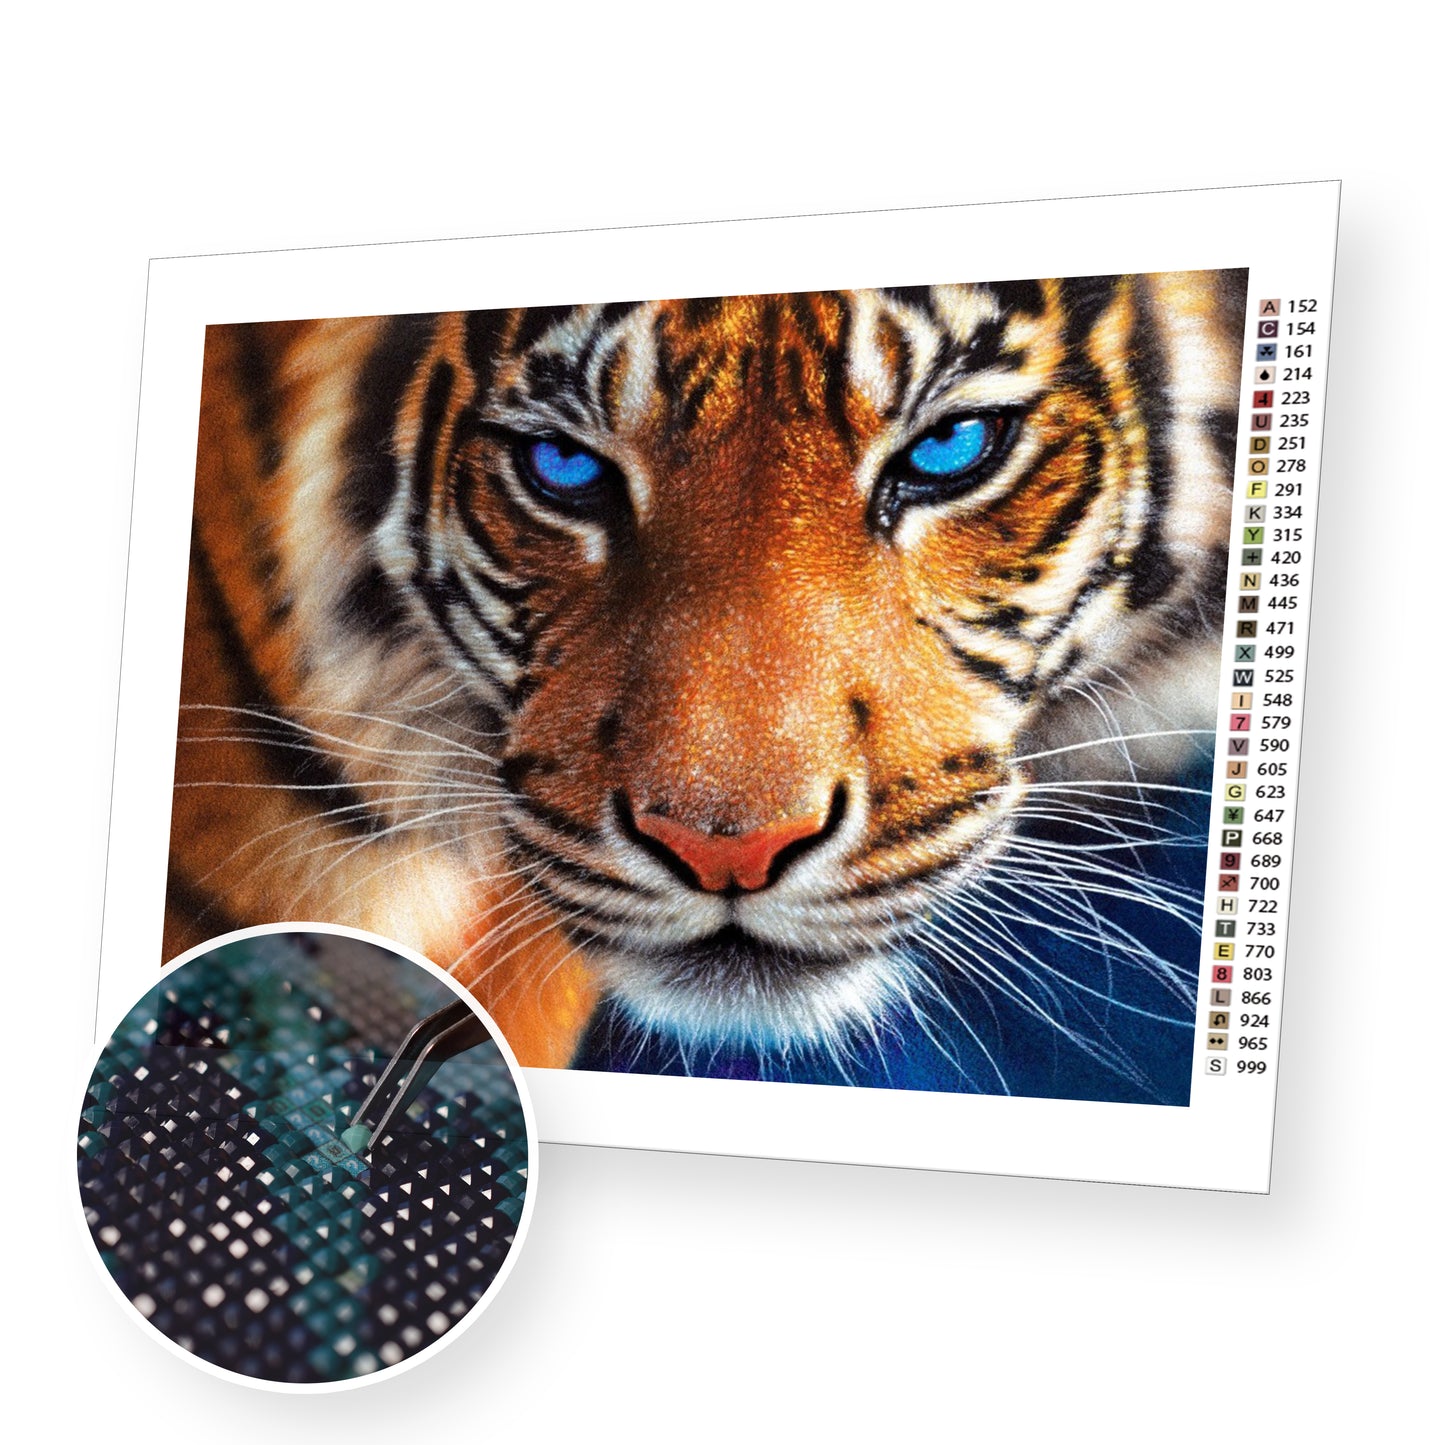 Tiger Close-Up - Diamond Painting Kit - [Diamond Painting Kit]